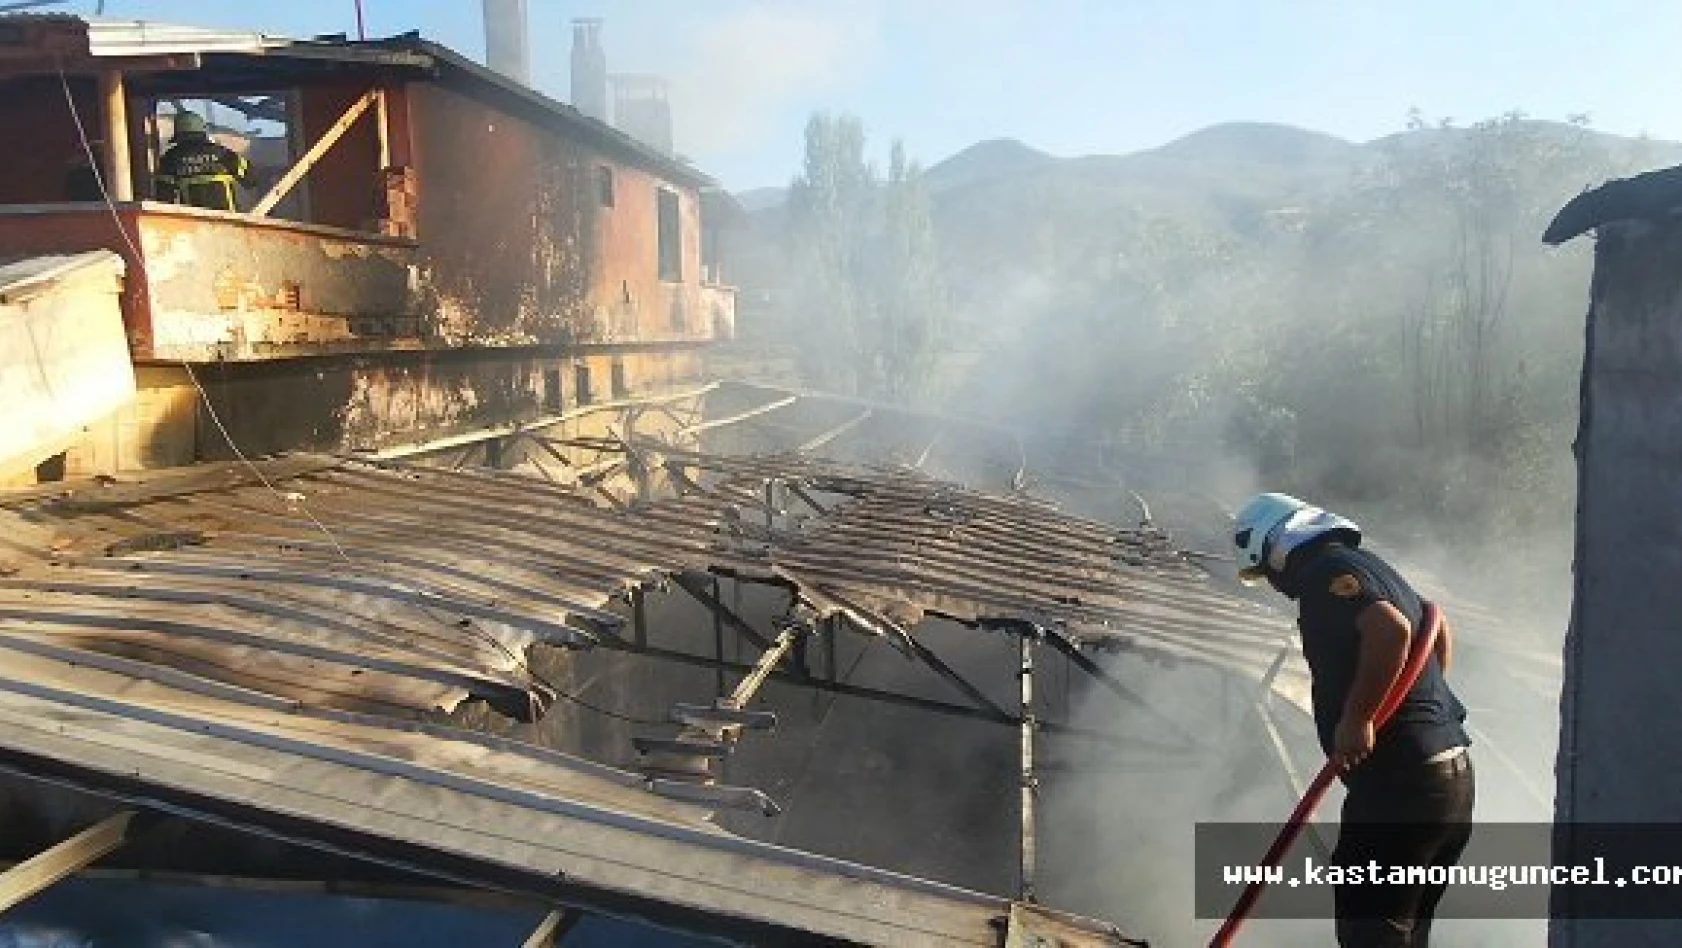 Kastamonu'da Yangın: 2 Katlı Ev ve İşyeri Kül Oldu